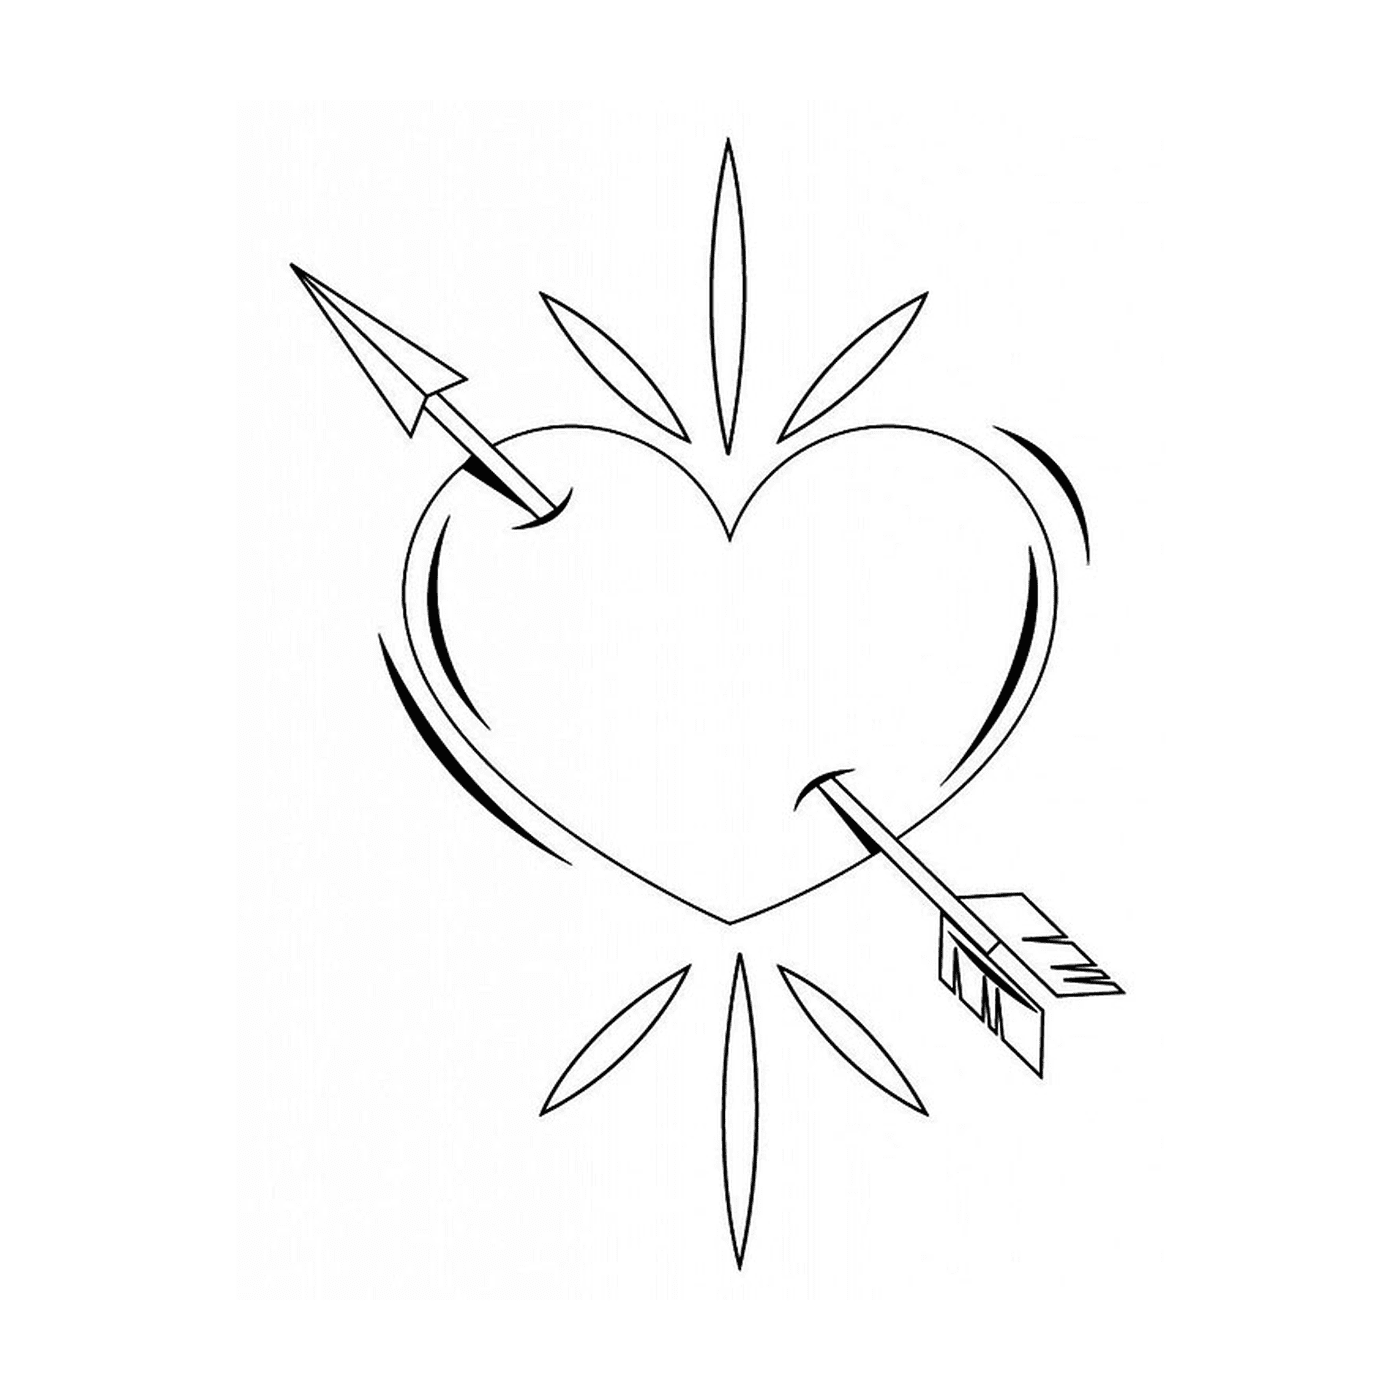   Un cœur transpercé par une flèche dessiné à l'encre noire 